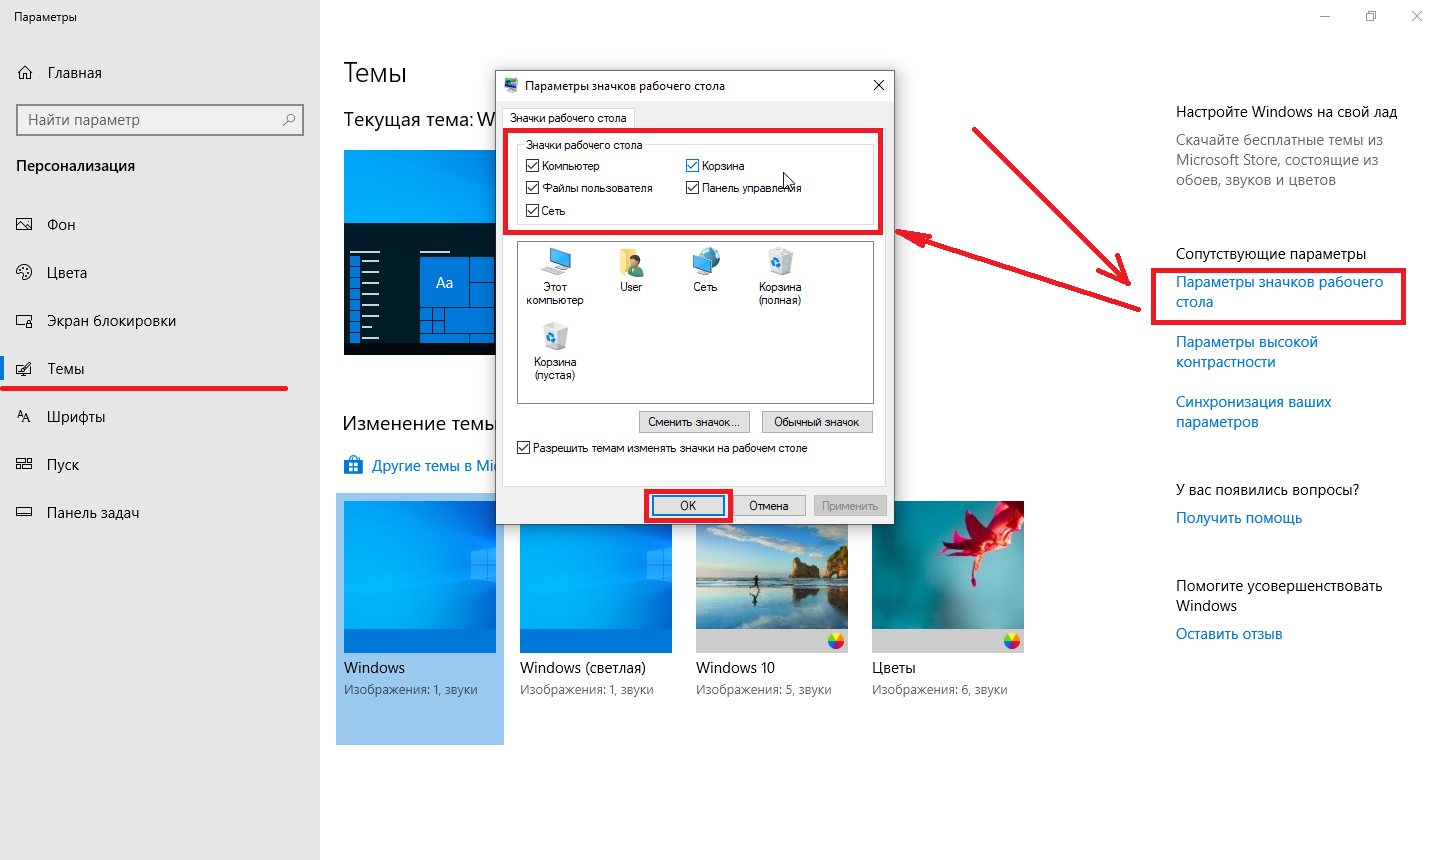 Сменить значки windows 10. Параметры значков рабочего стола в Windows 10. Изменение рабочего стола Windows 10. Изменение значков рабочего стола. Редактировать значки рабочего стола.